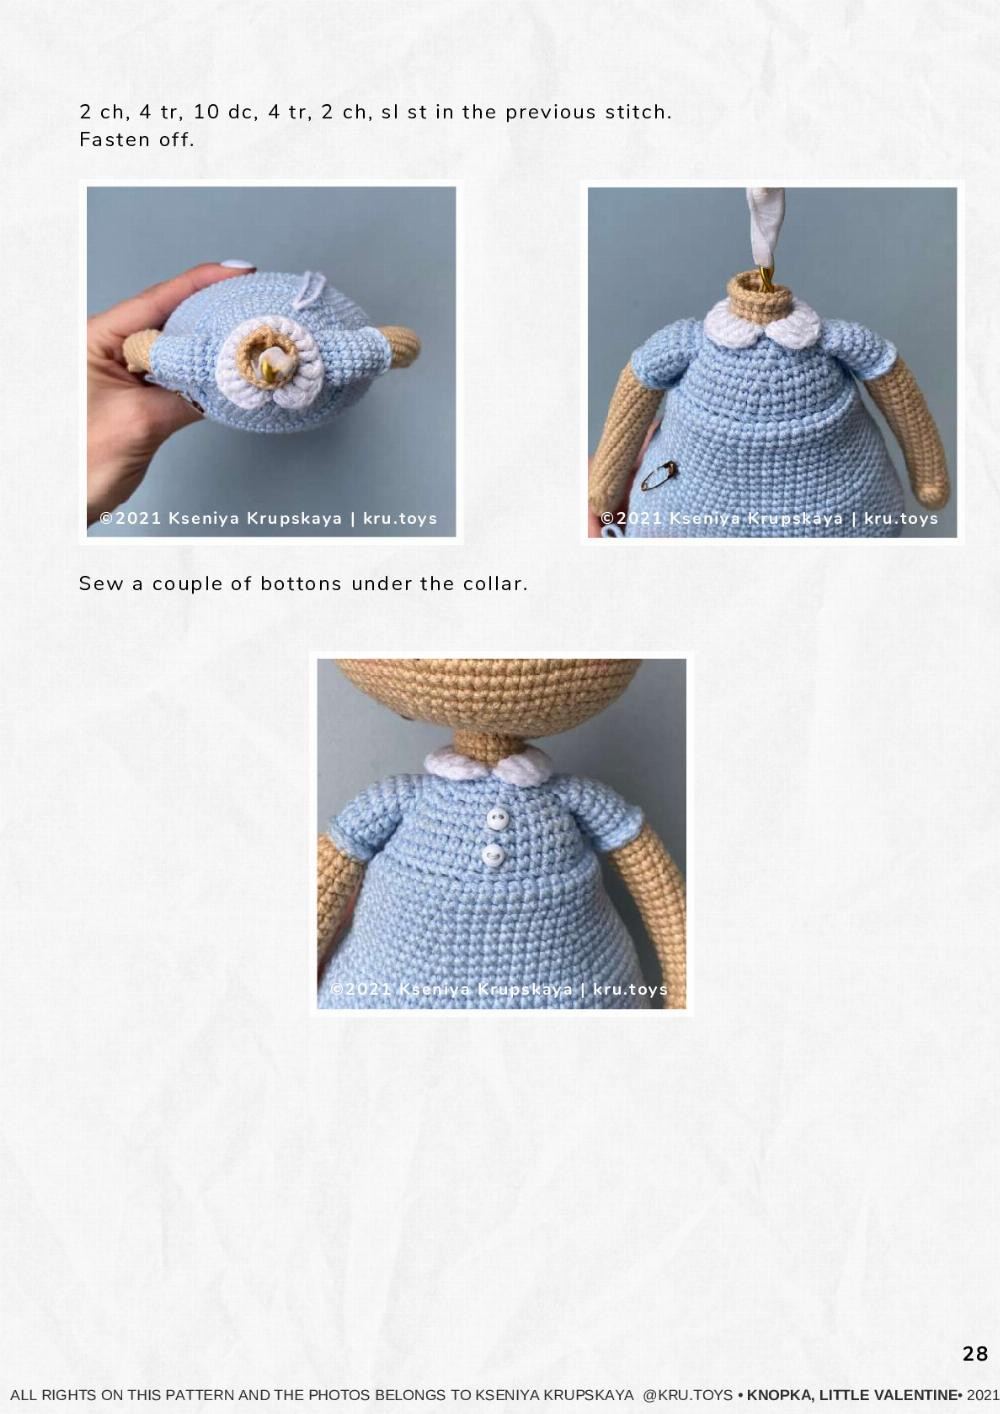 crochet pattern KNOPKA, THE little vALENTINE, Crochet pattern for a little girl doll wearing a blue dress holding a heart-shaped balloon